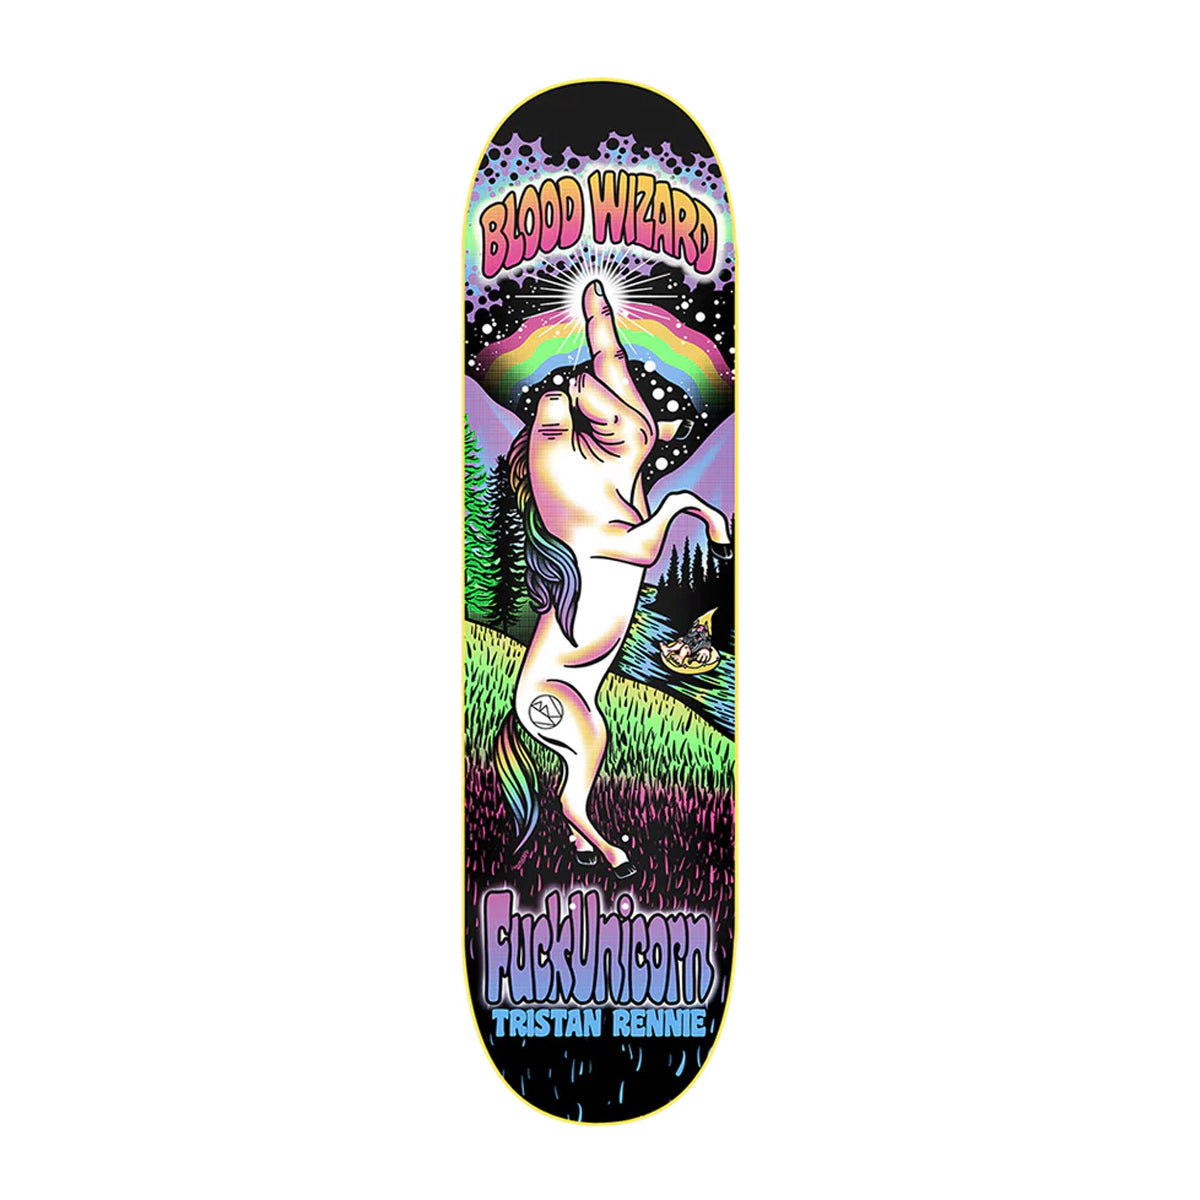 Blood Wizard FuckUnicorn Tristan Rennie Skateboard Deck 8.38" - Apple Valley Emporium